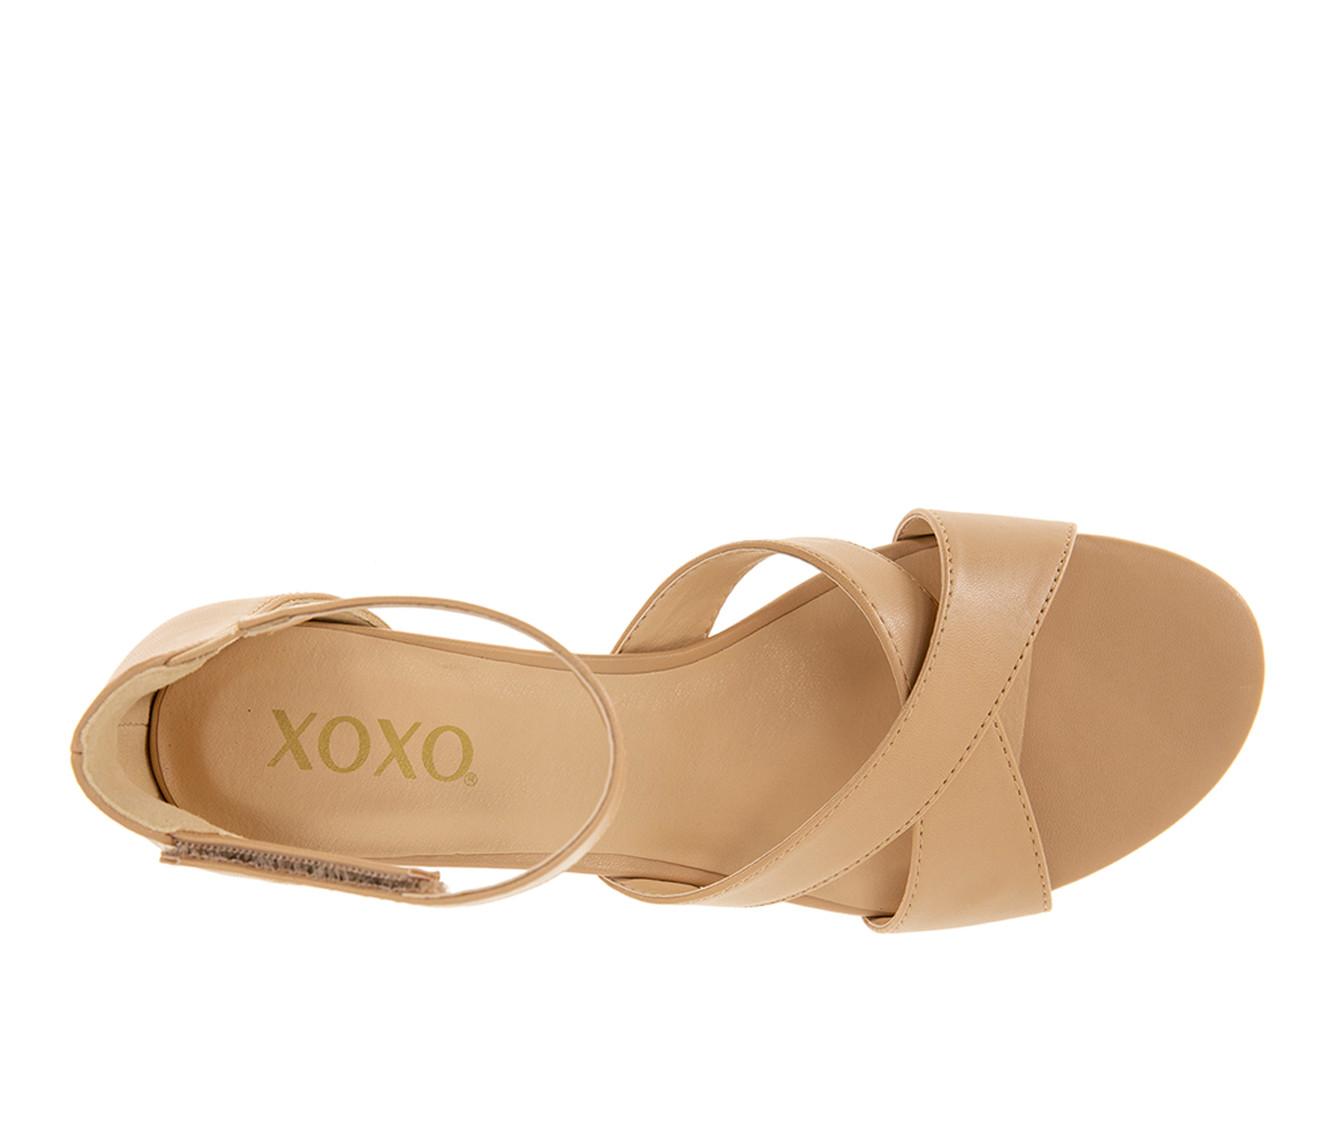 Women's XOXO Alisha Wedge Sandals